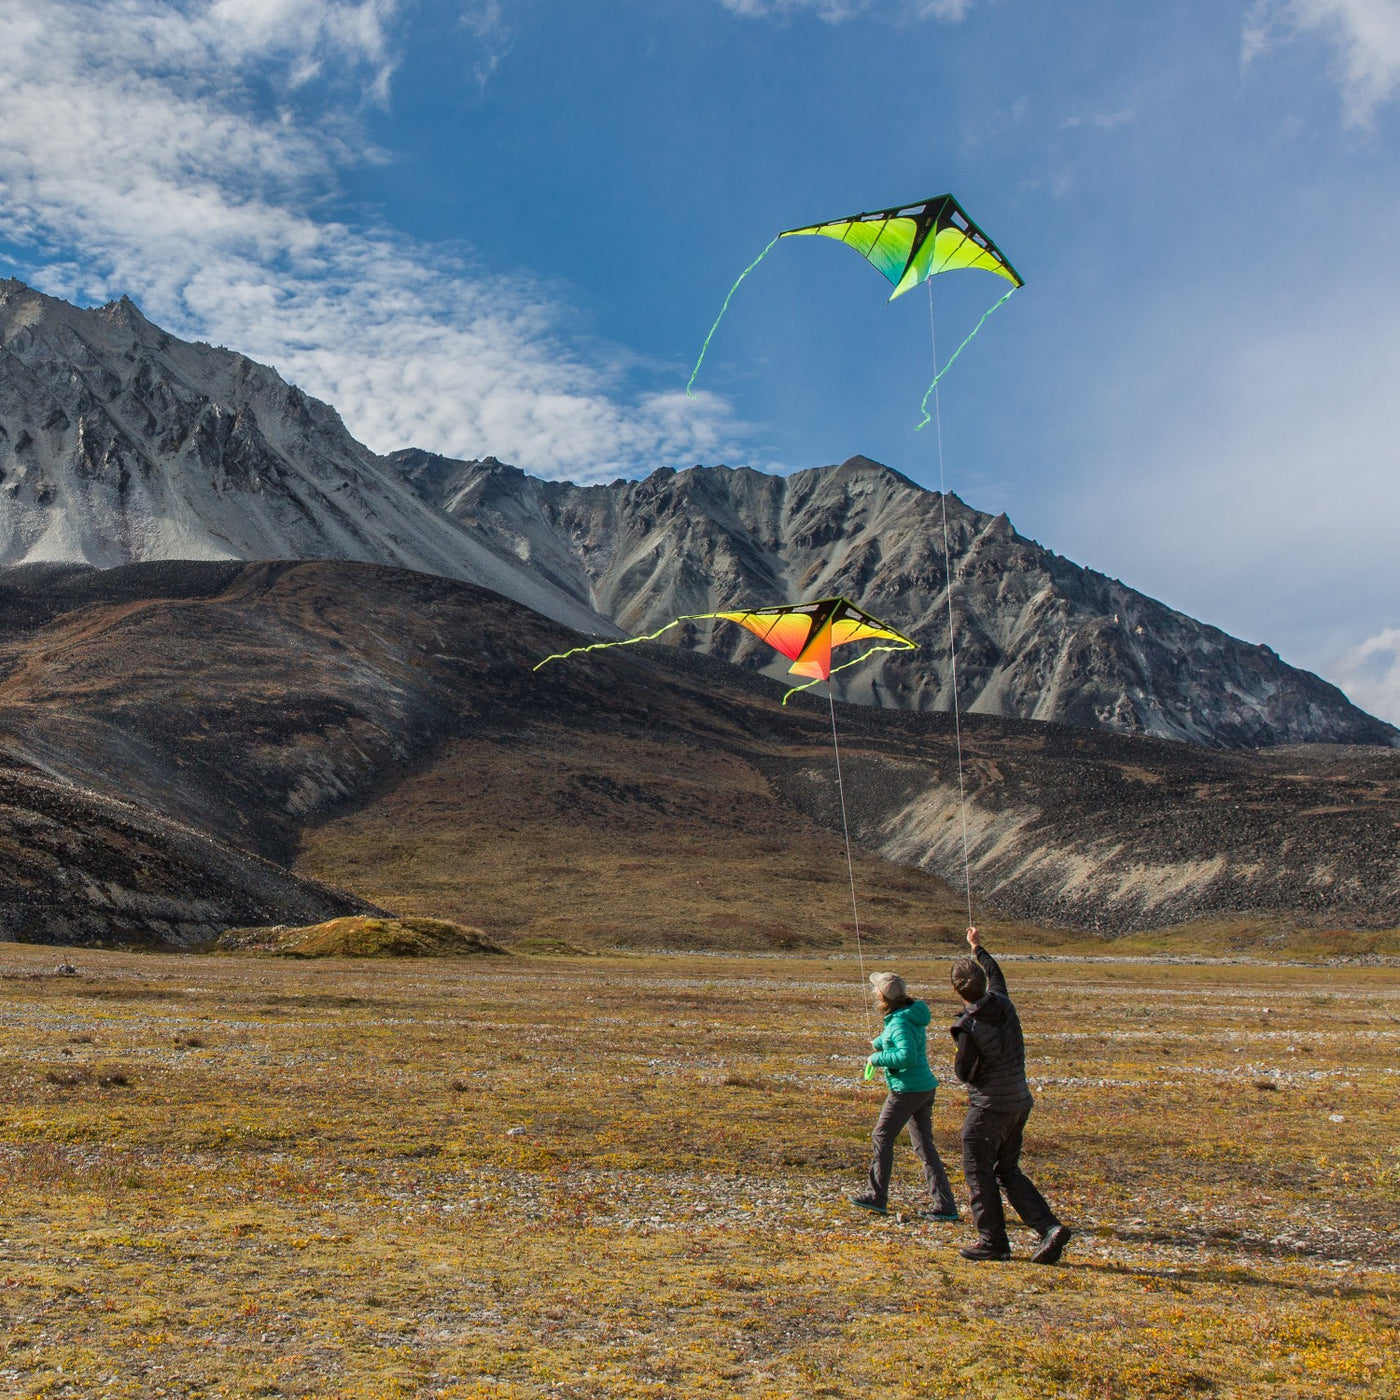 Two people flying Zenith 7 deltas in Alaska